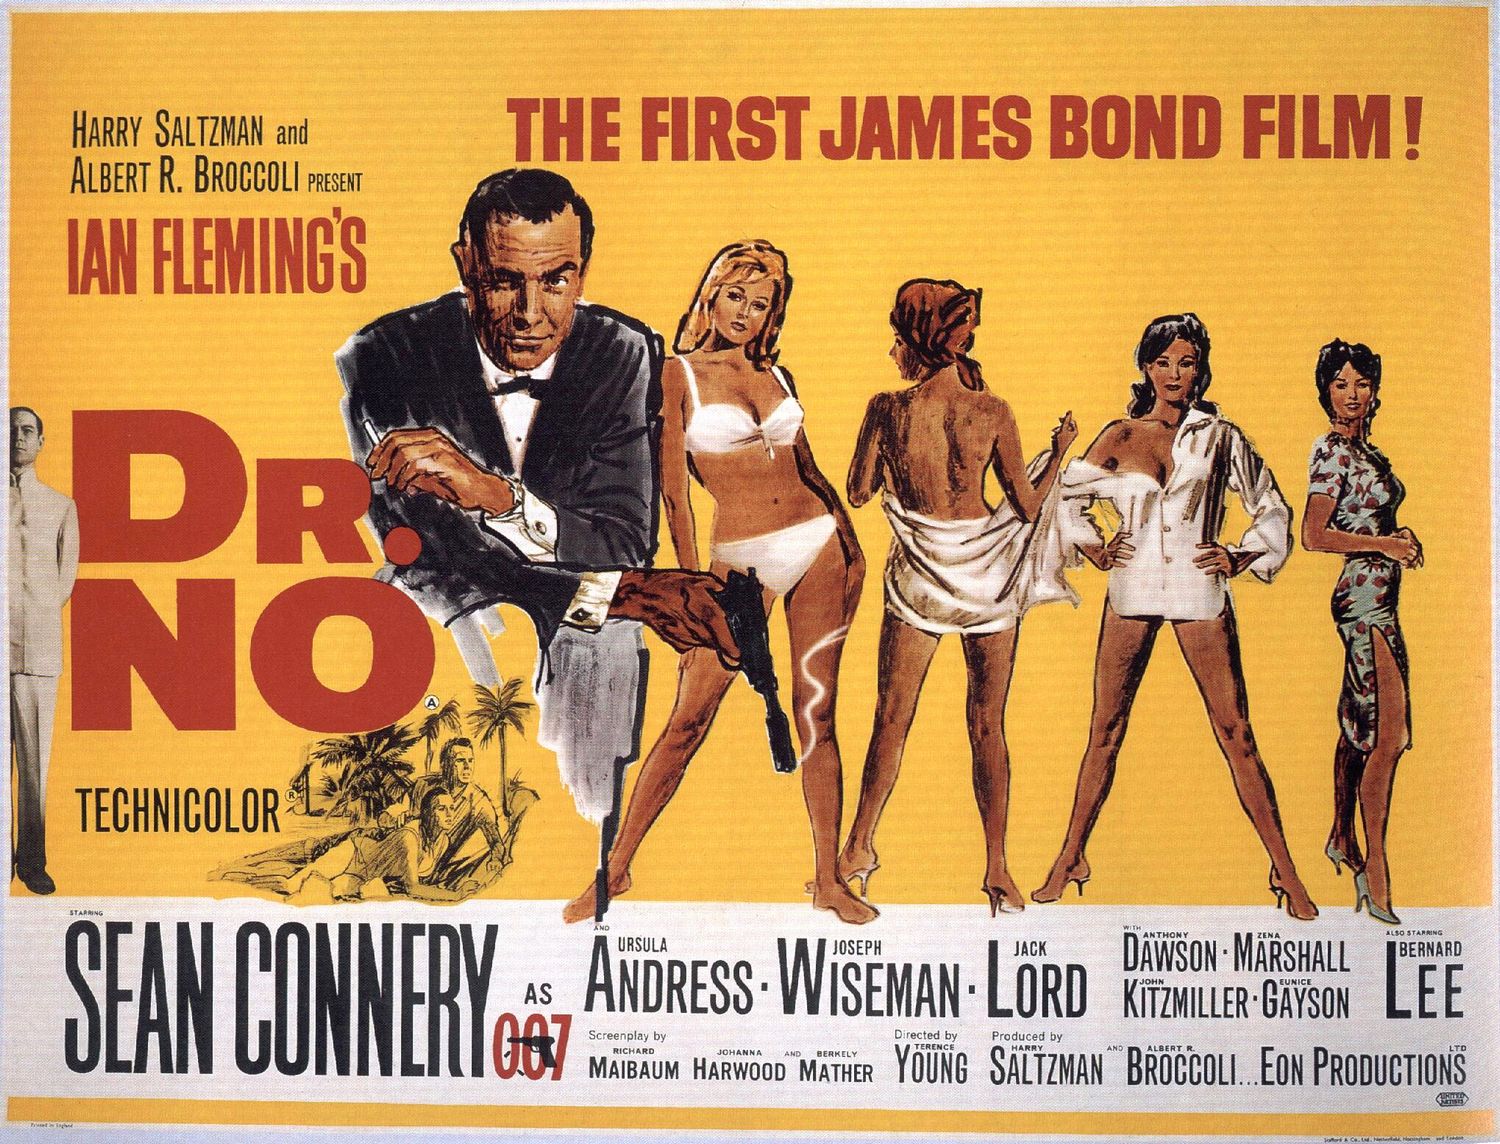 ne vienas iš senovinių siaubo filmų plakatų, apie kuriuos kalbėjome, o pirmasis pirmojo filmo apie Džeimsą Bondą plakatas yra gražus.  